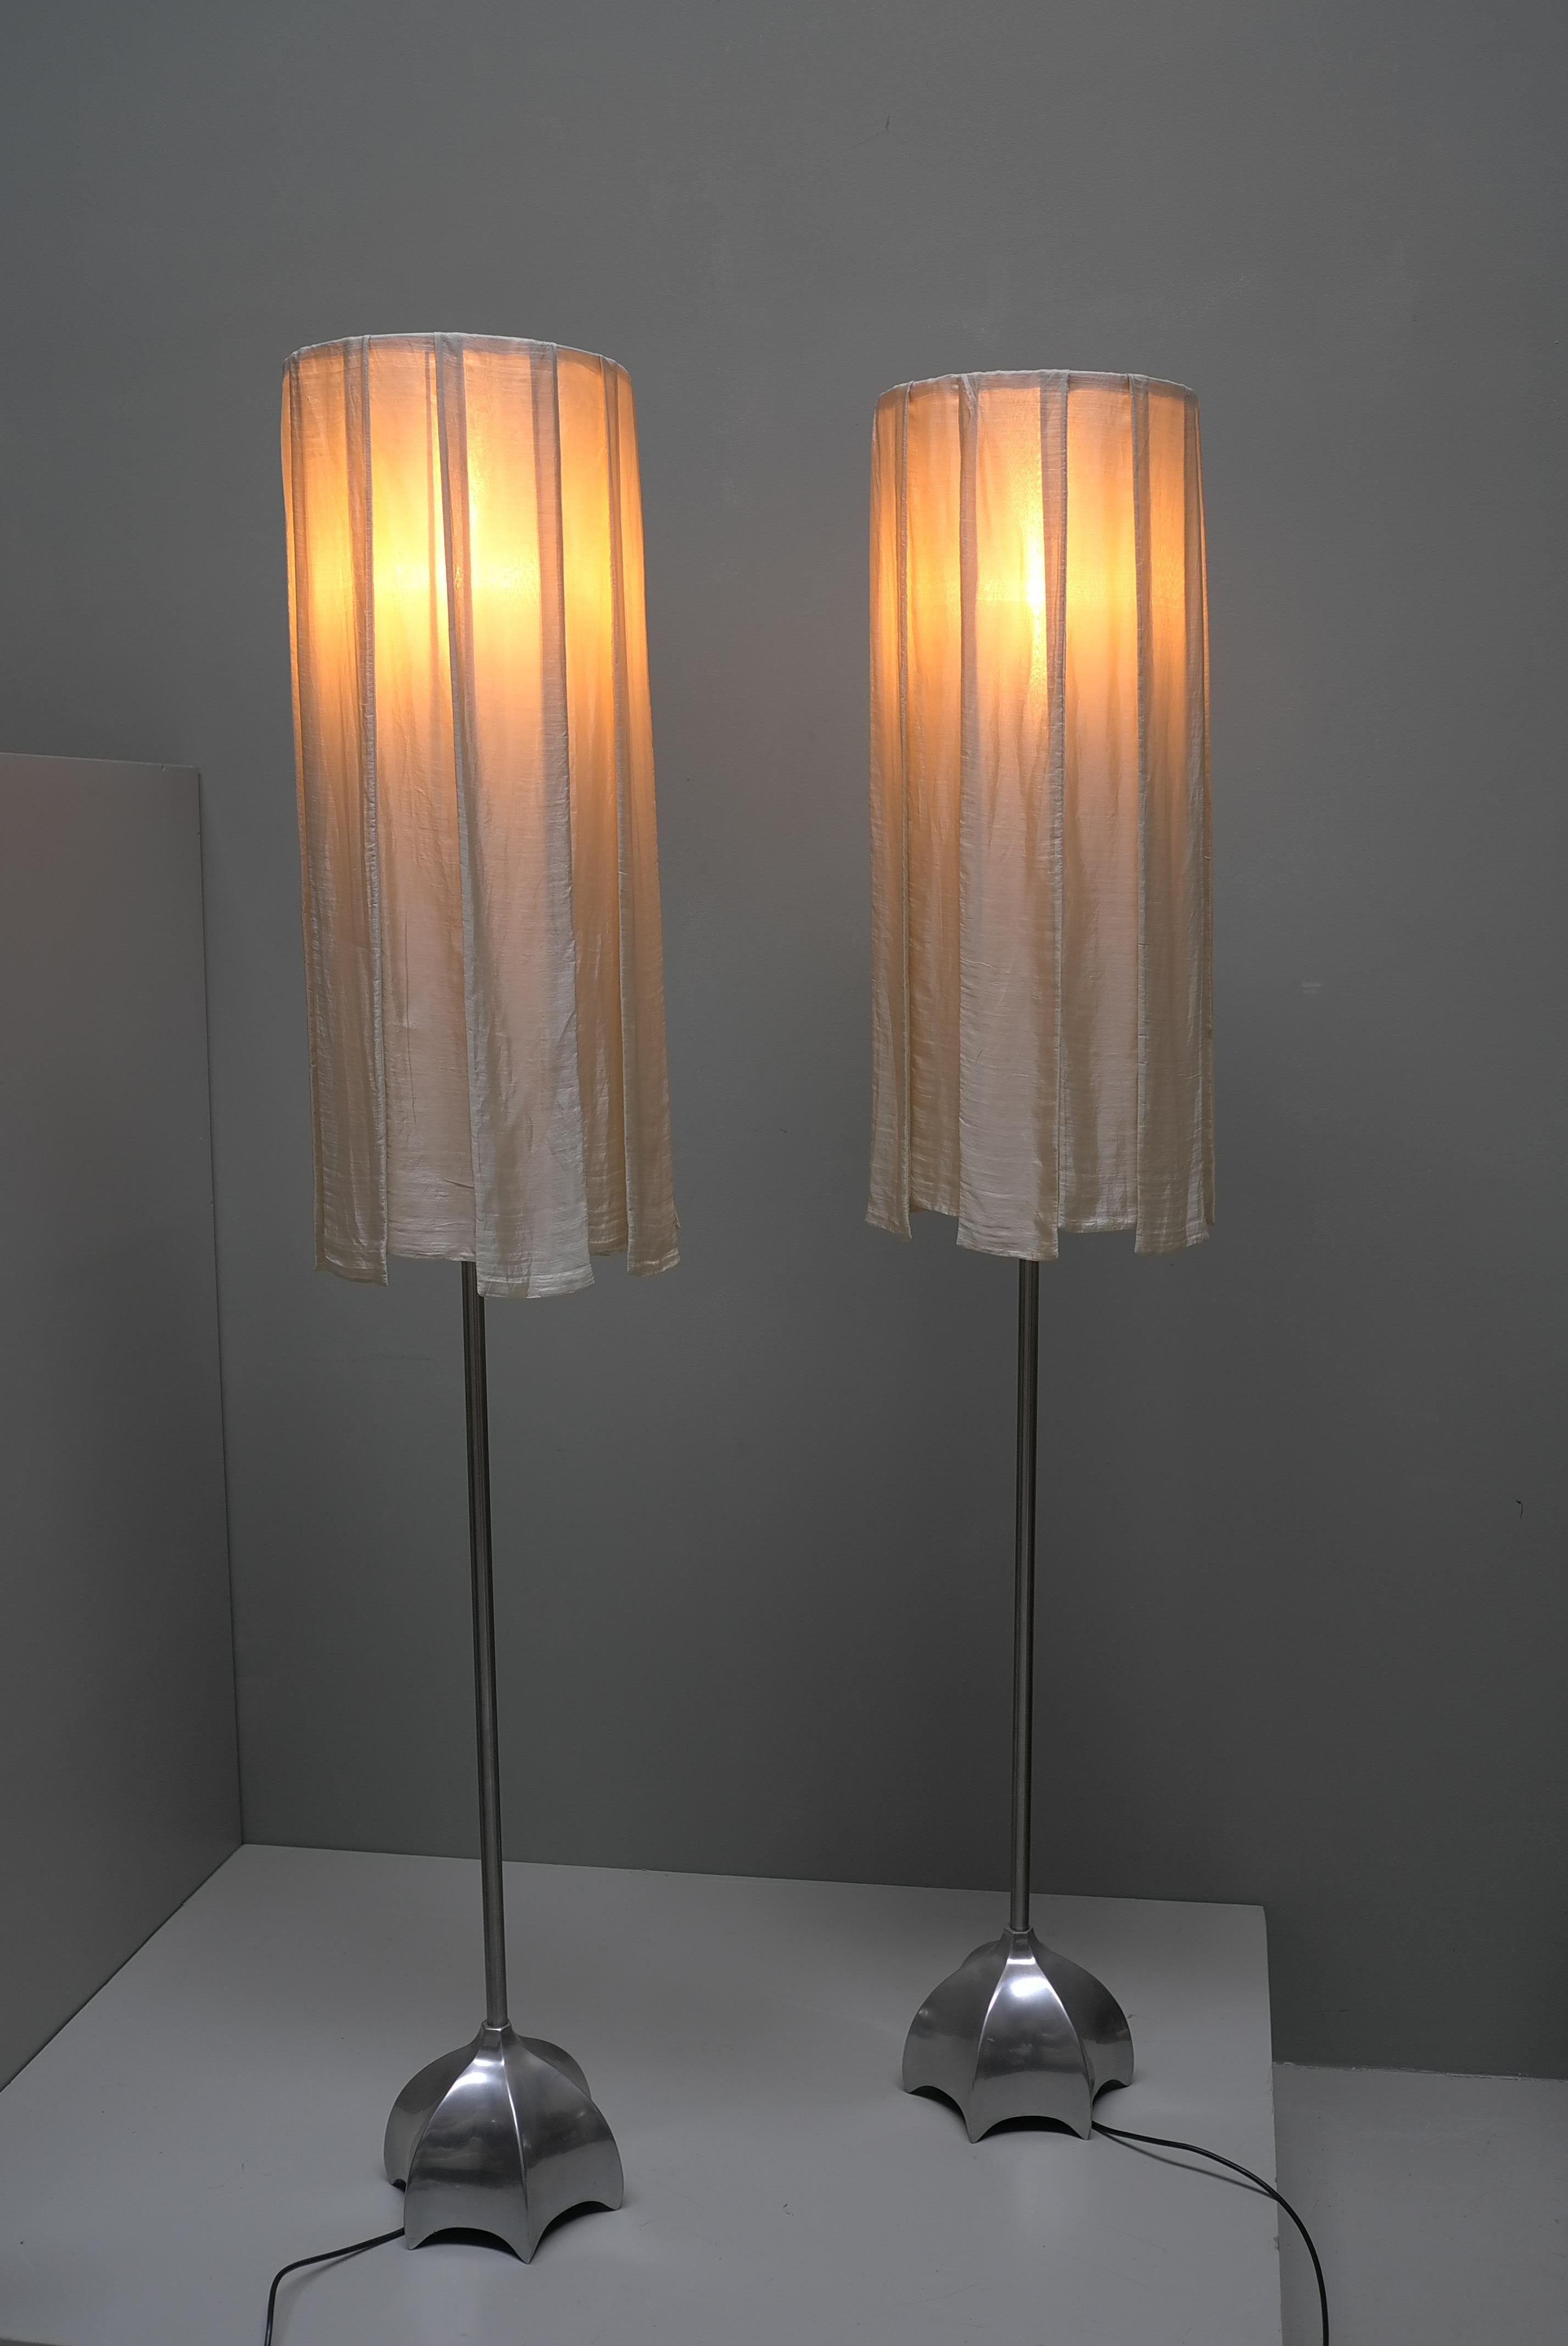 Ein Paar skulpturale Stehlampen aus Messing mit weißen Seidenvorhangschirmen um 1980. Die Lampen sind dimmbar.

